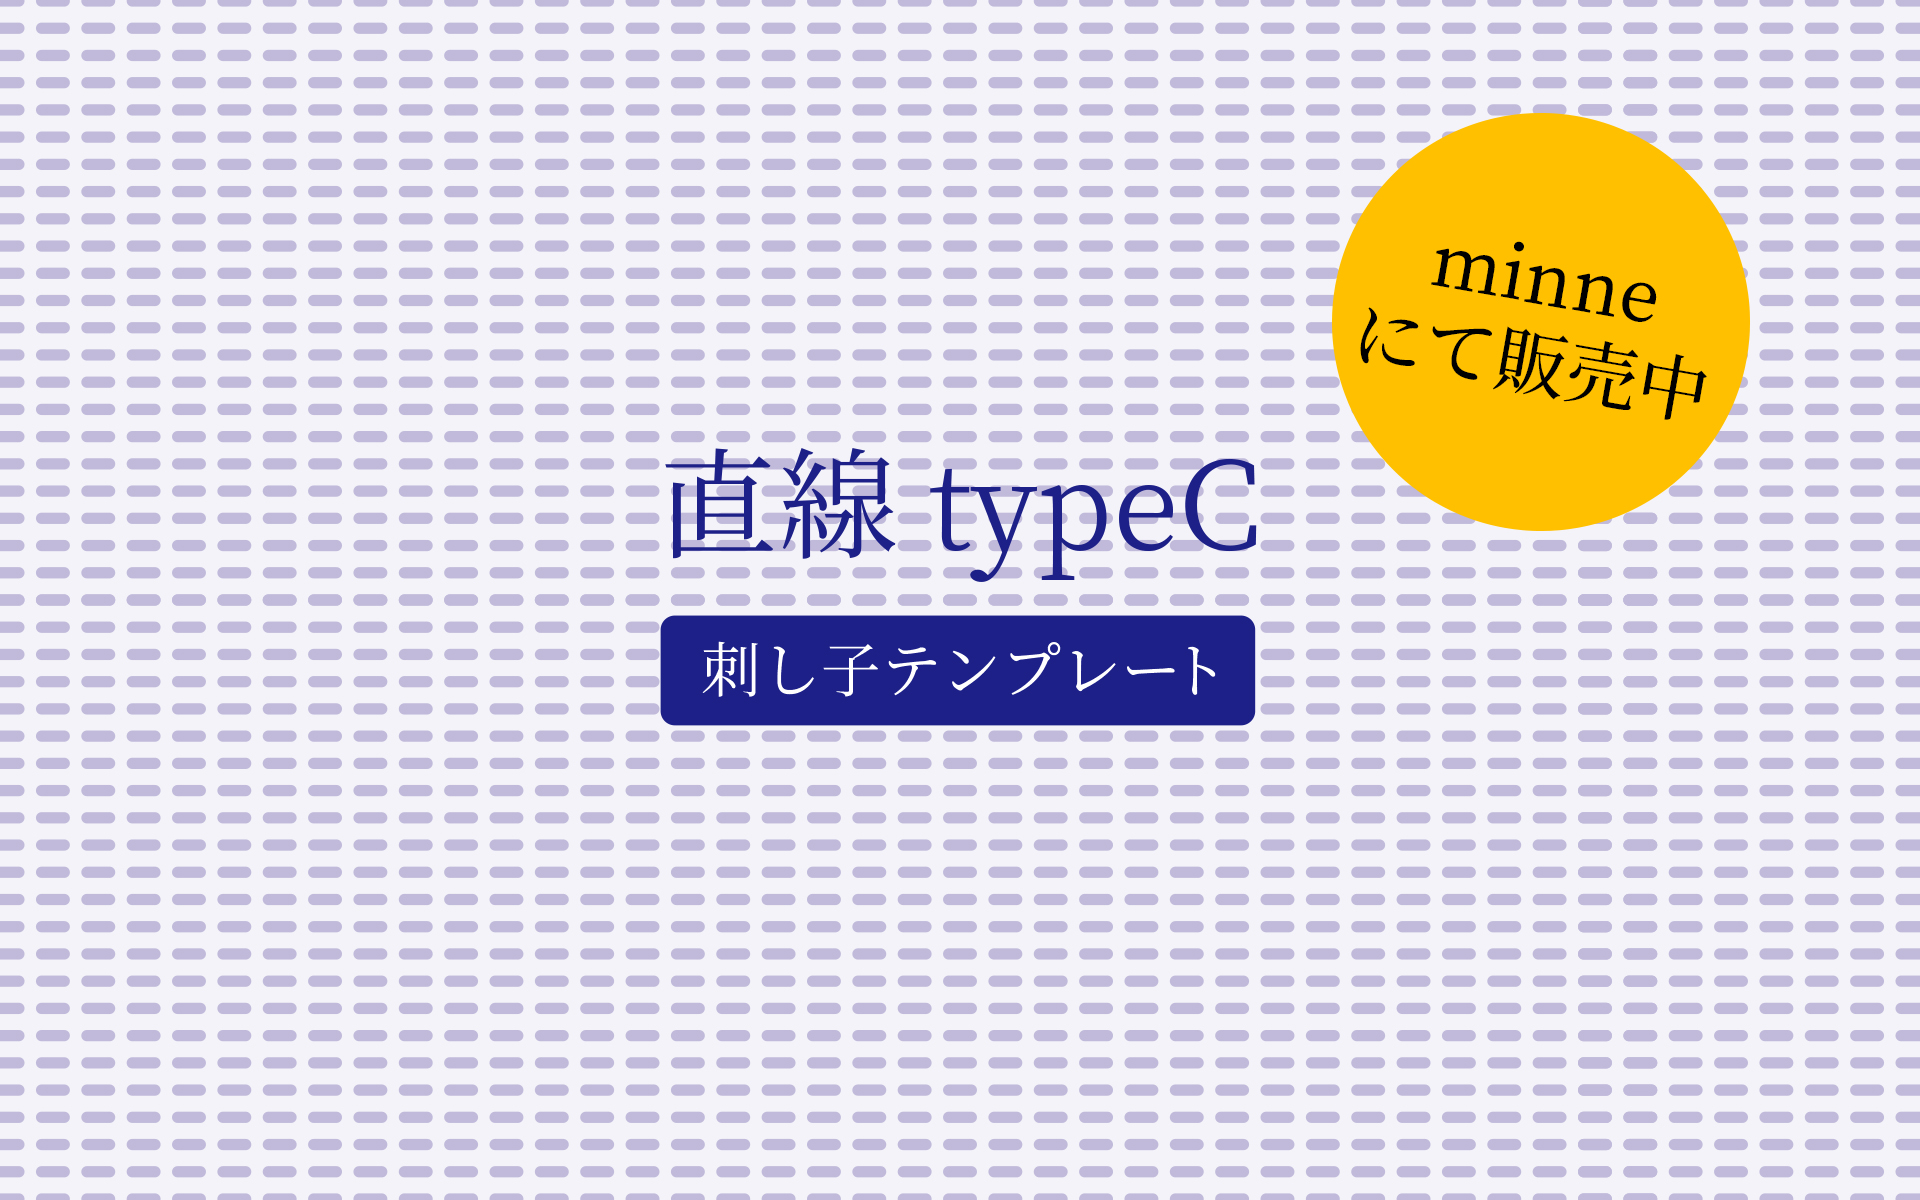 直線 TypeC【刺し子テンプレート】『minne』にて販売中。